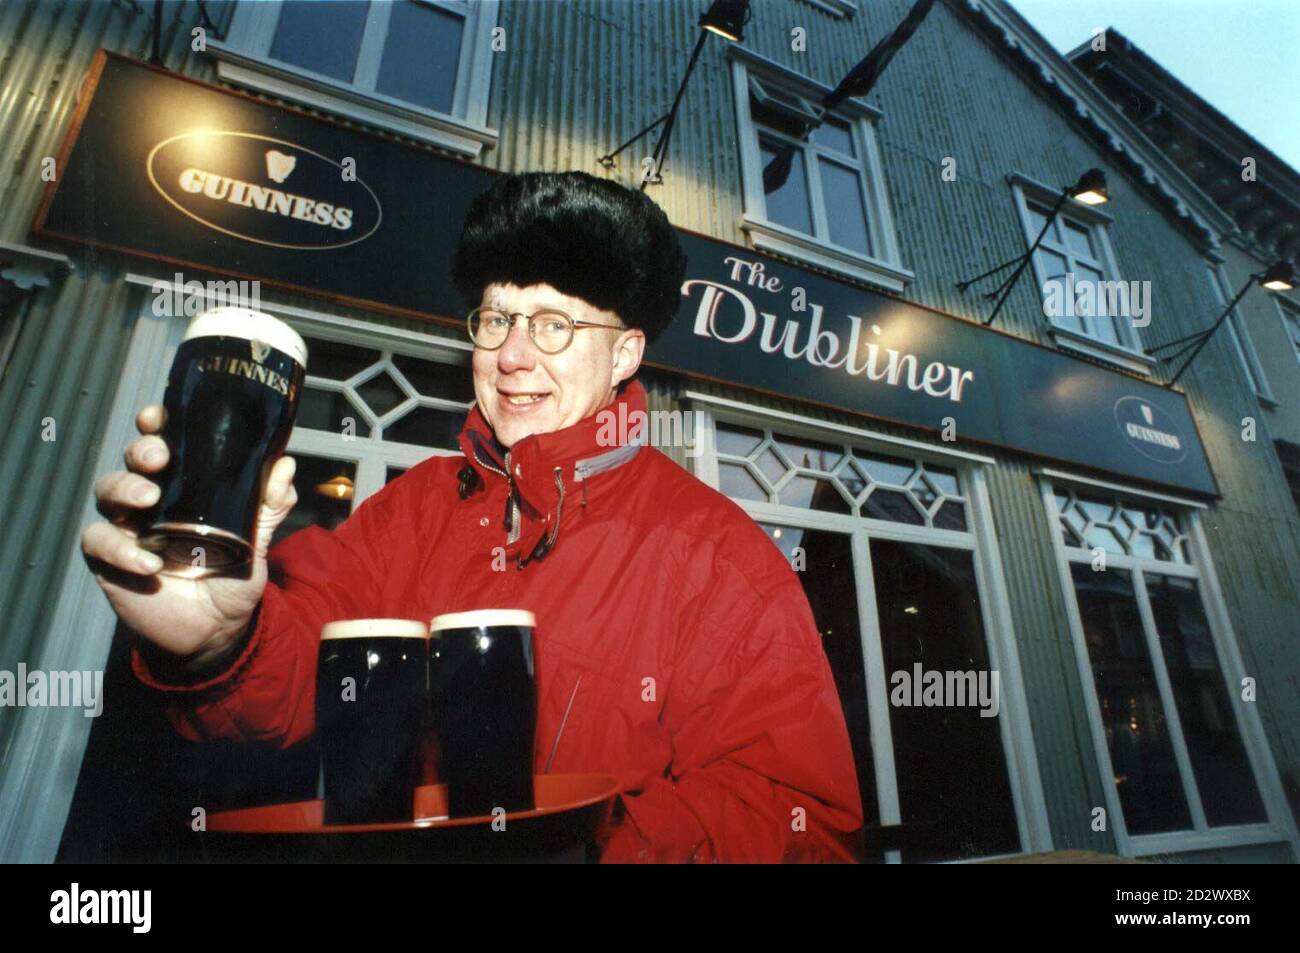 Besitzer Bjarni Omar bereitet sich darauf vor, durstigen Isländern noch mehr Pint Guinness zu servieren, da die Weihnachtsstimmung der Insel in diesem Jahr einen typisch irischen Geschmack annimmt, wobei die Einwohner von Reykjavik in nur zwei Wochen 10,000 Pint des berühmten schwarzen Stout genießen. Seit der Eröffnung ist die Stadt der erste Irish-Stil Pub "The Dubliner". SEHEN SIE SICH DIE PA-GESCHICHTE AN. Stockfoto